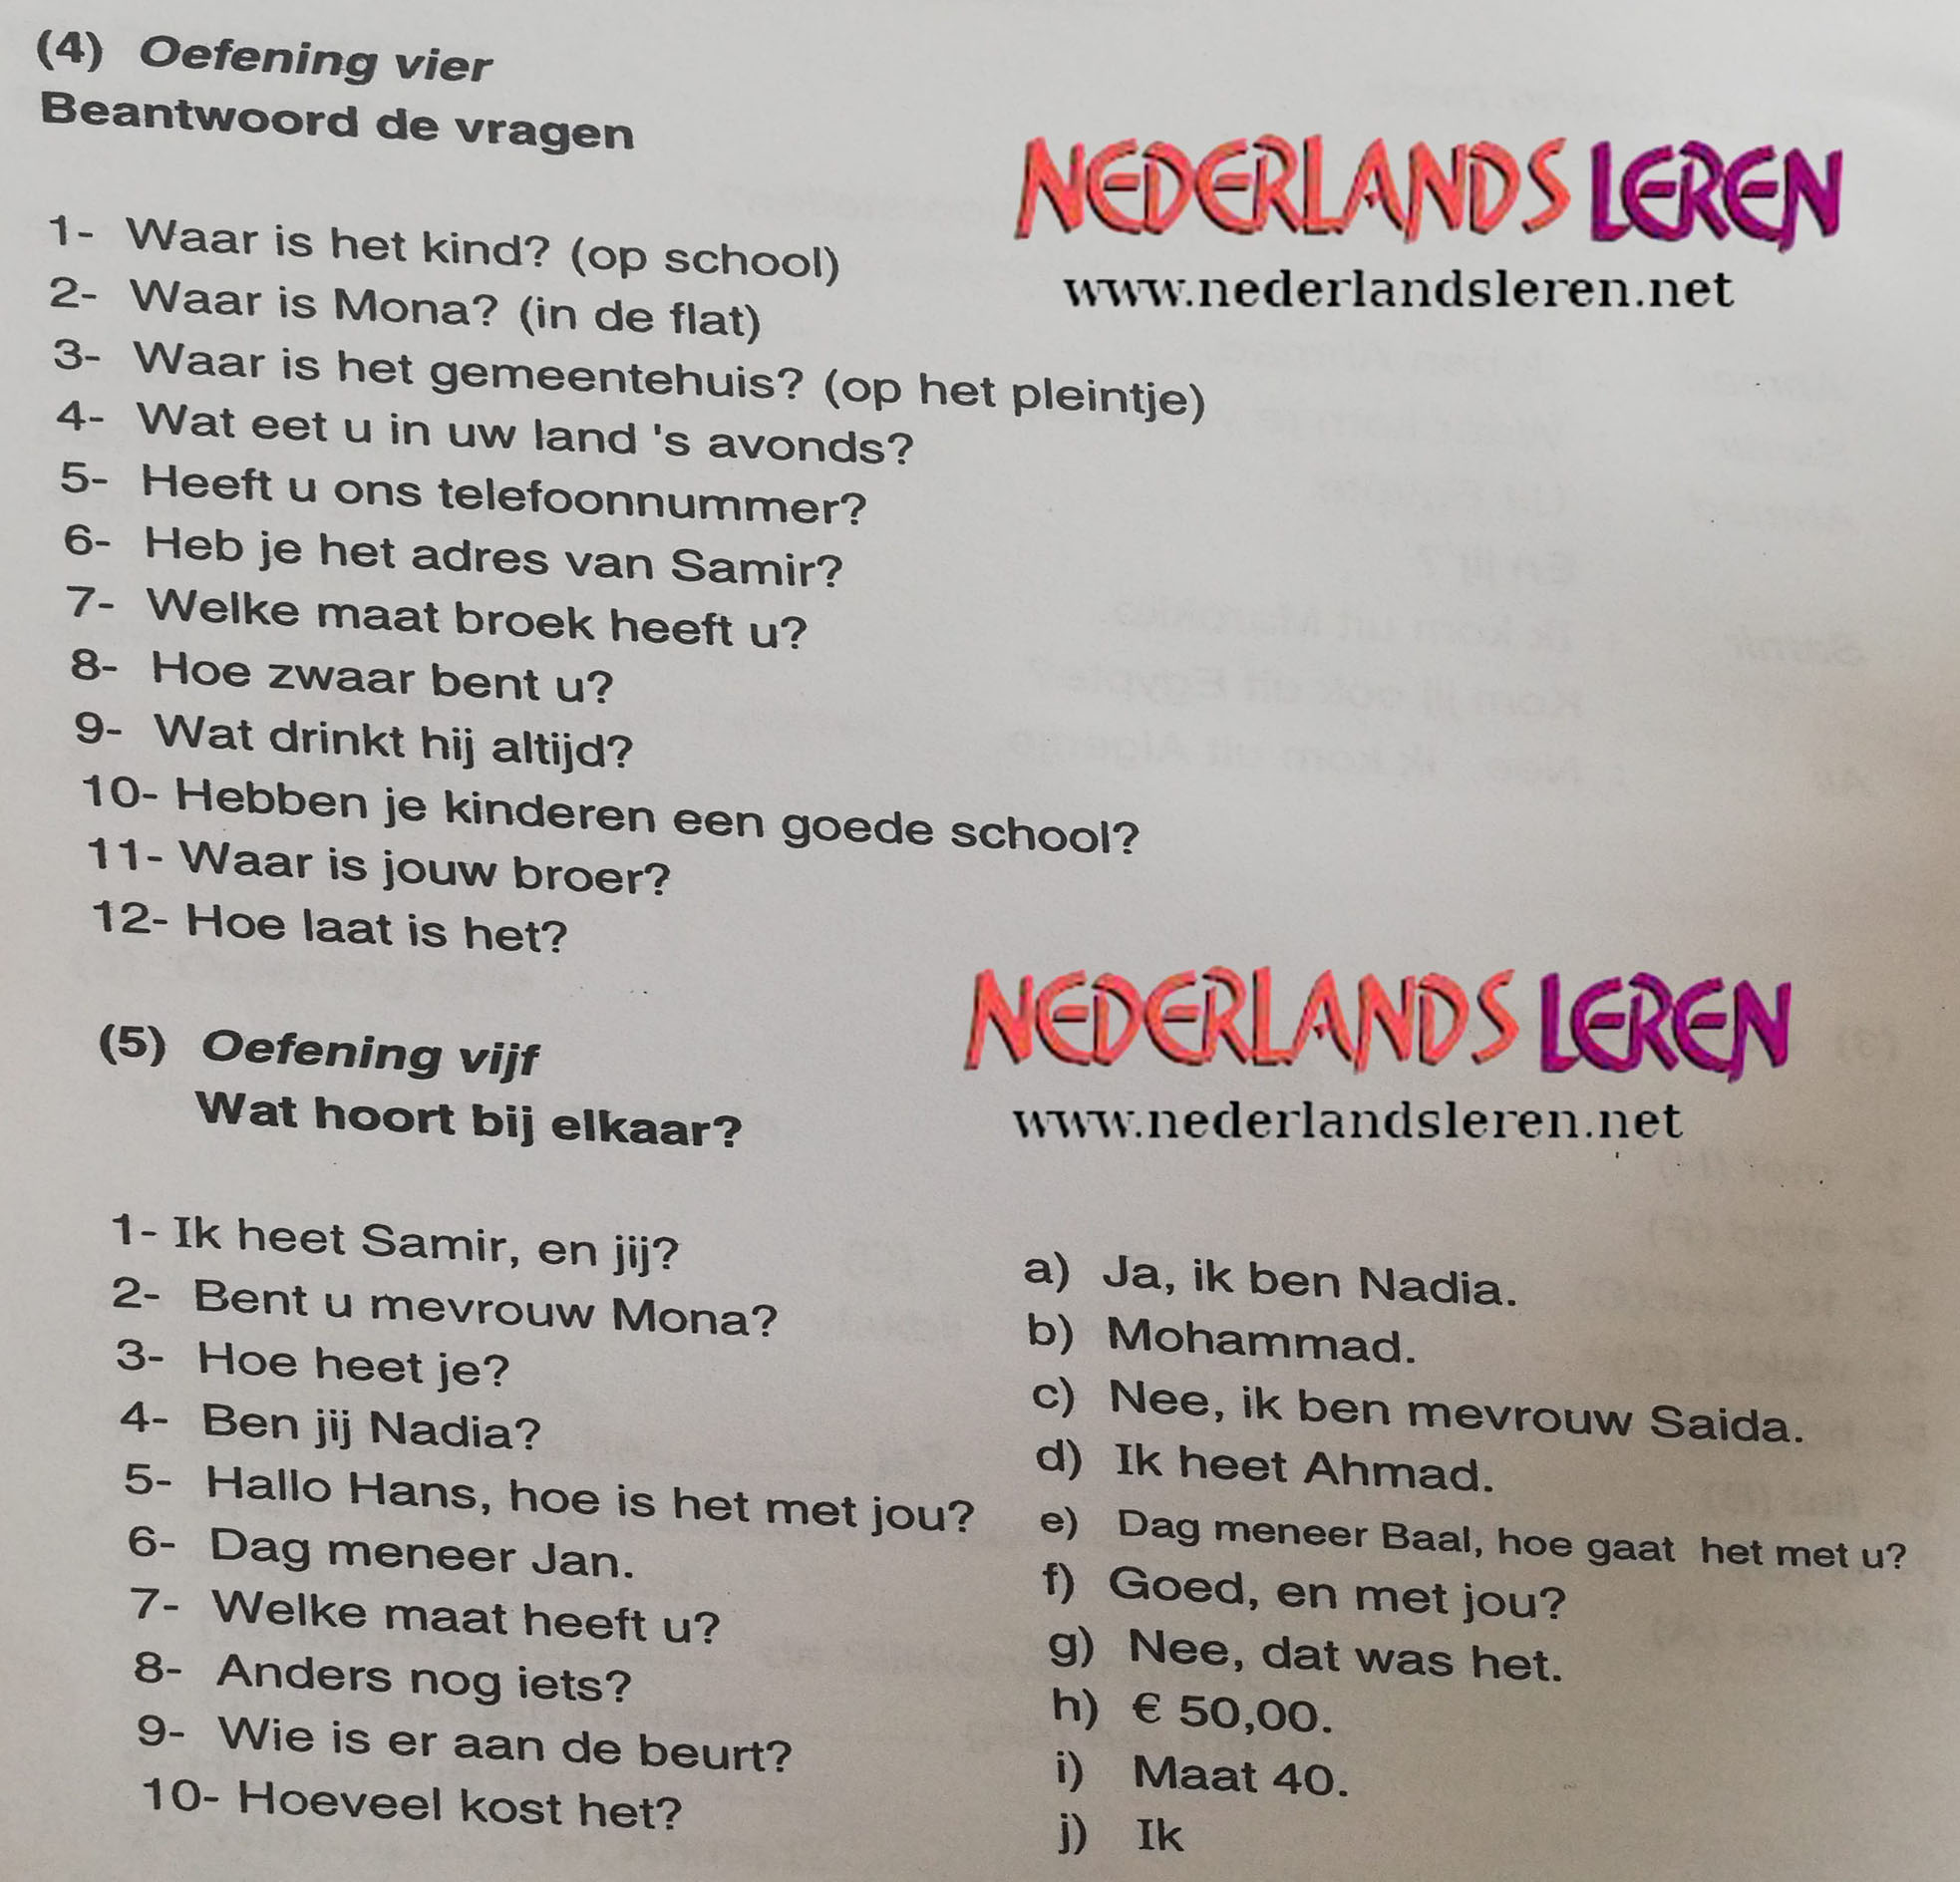 نماذج رقم (2) من امتحانات اللغة الهولندية مرفوقة مع الحلول 2022